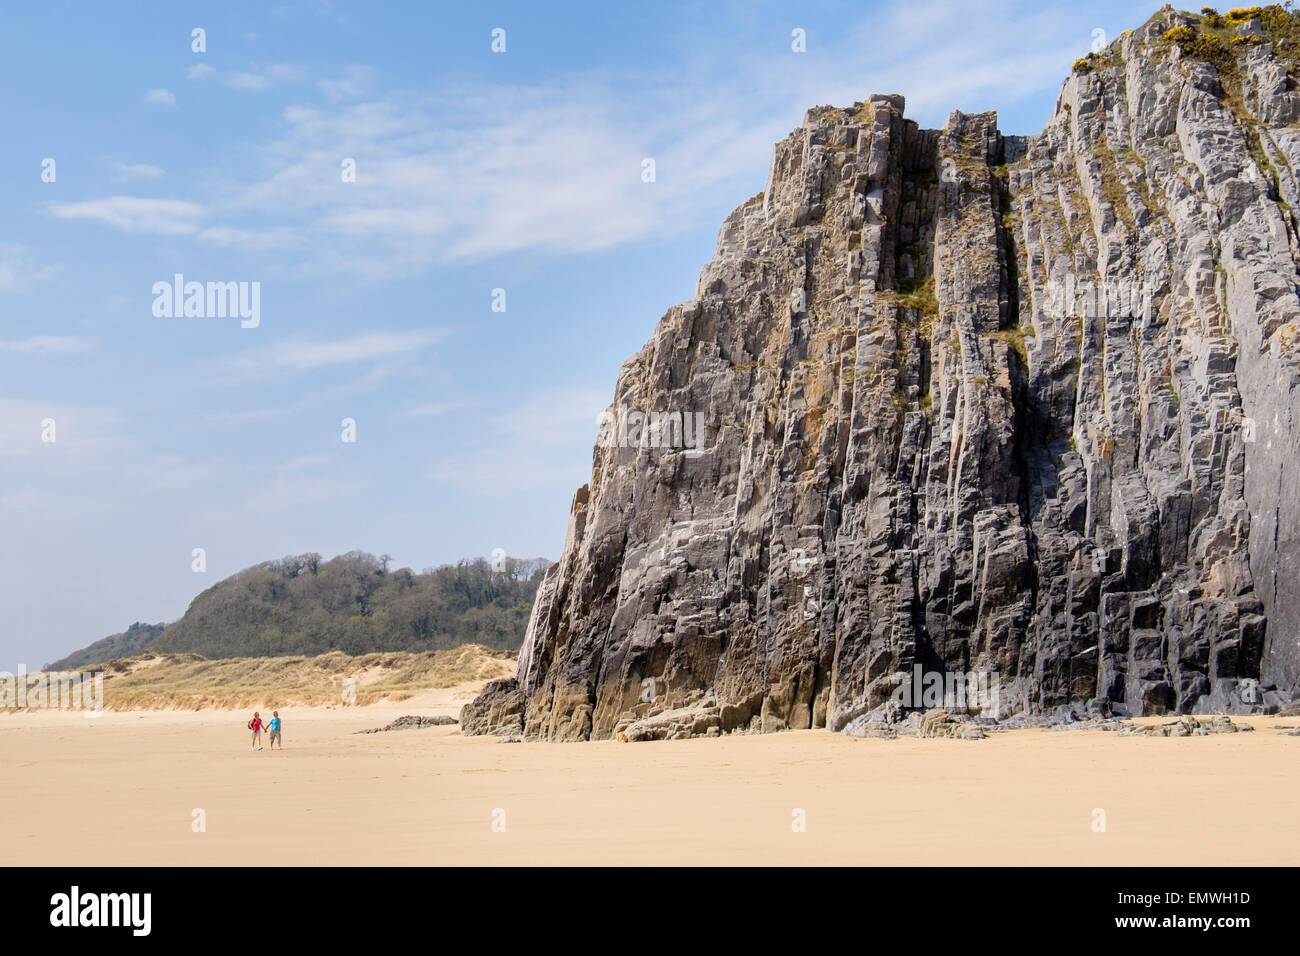 Plage de sable de la baie de Tor (traeth) et rocheux de calcaire à marée basse dans la baie d'Oxwich sur la péninsule de Gower Swansea Glamorgan South Wales Royaume-uni Grande-Bretagne Banque D'Images